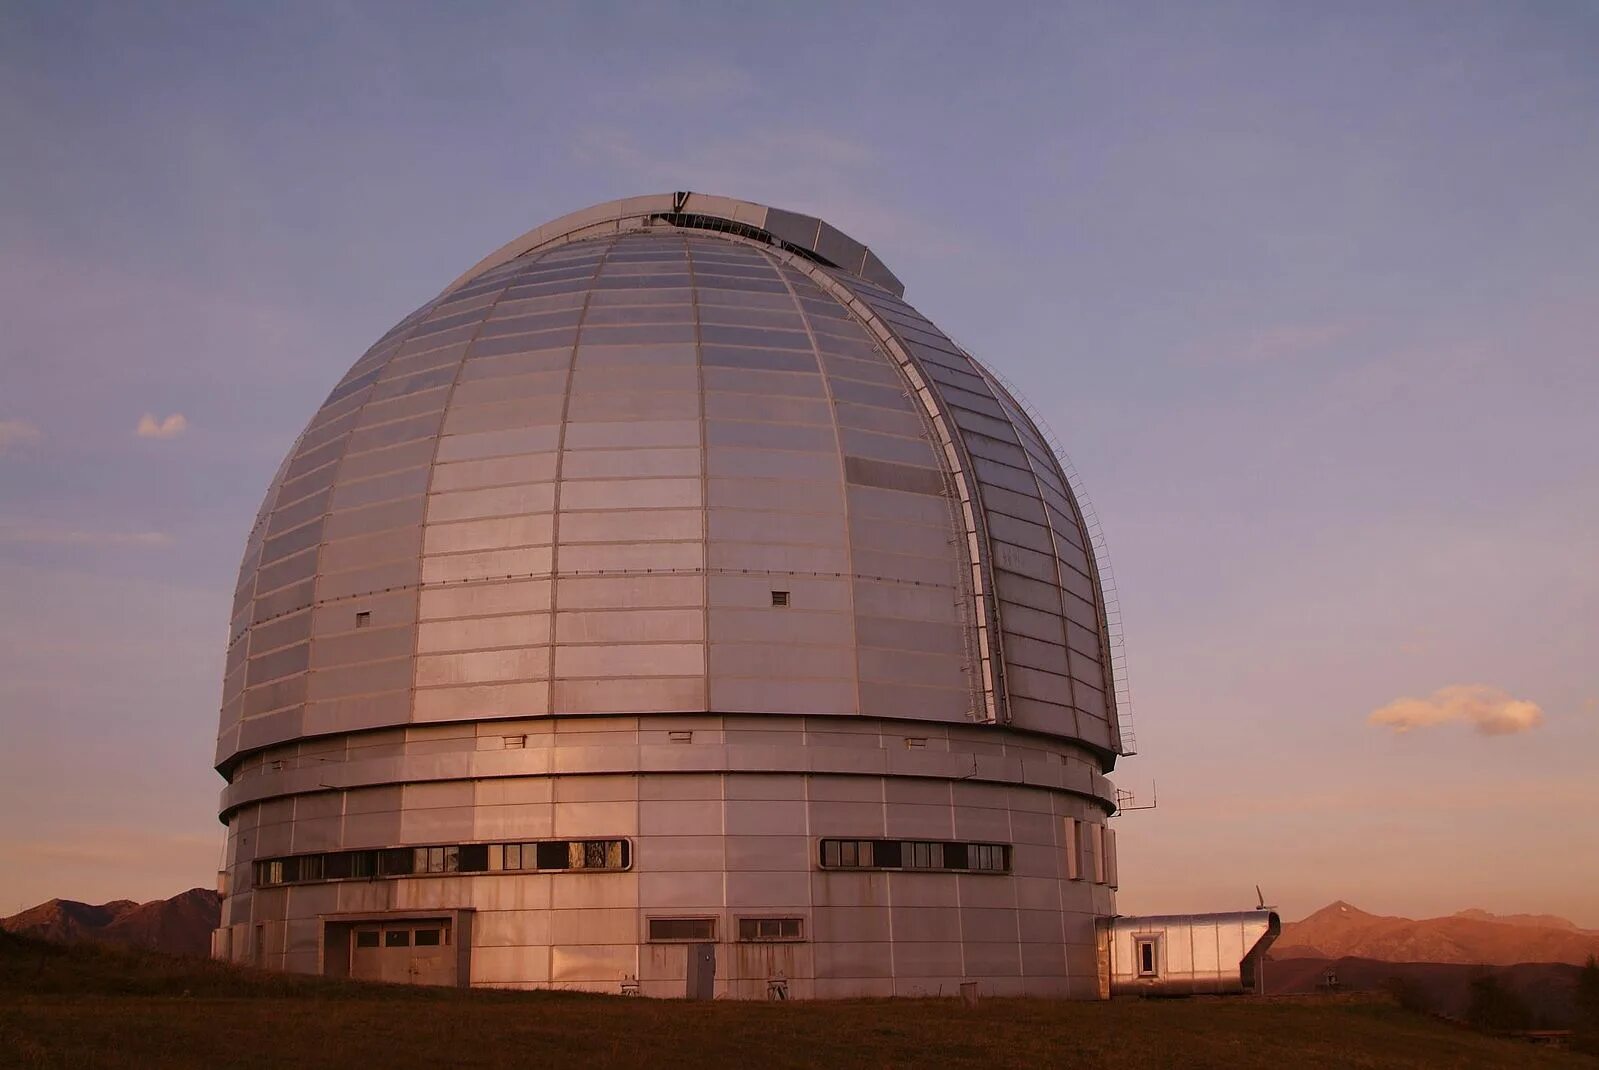 Самый большой телескоп в мире находится. Большой телескоп азимутальный БТА. БТА САО РАН телескоп. Телескоп БТА Архыз. Астрофизическая обсерватория БТА.